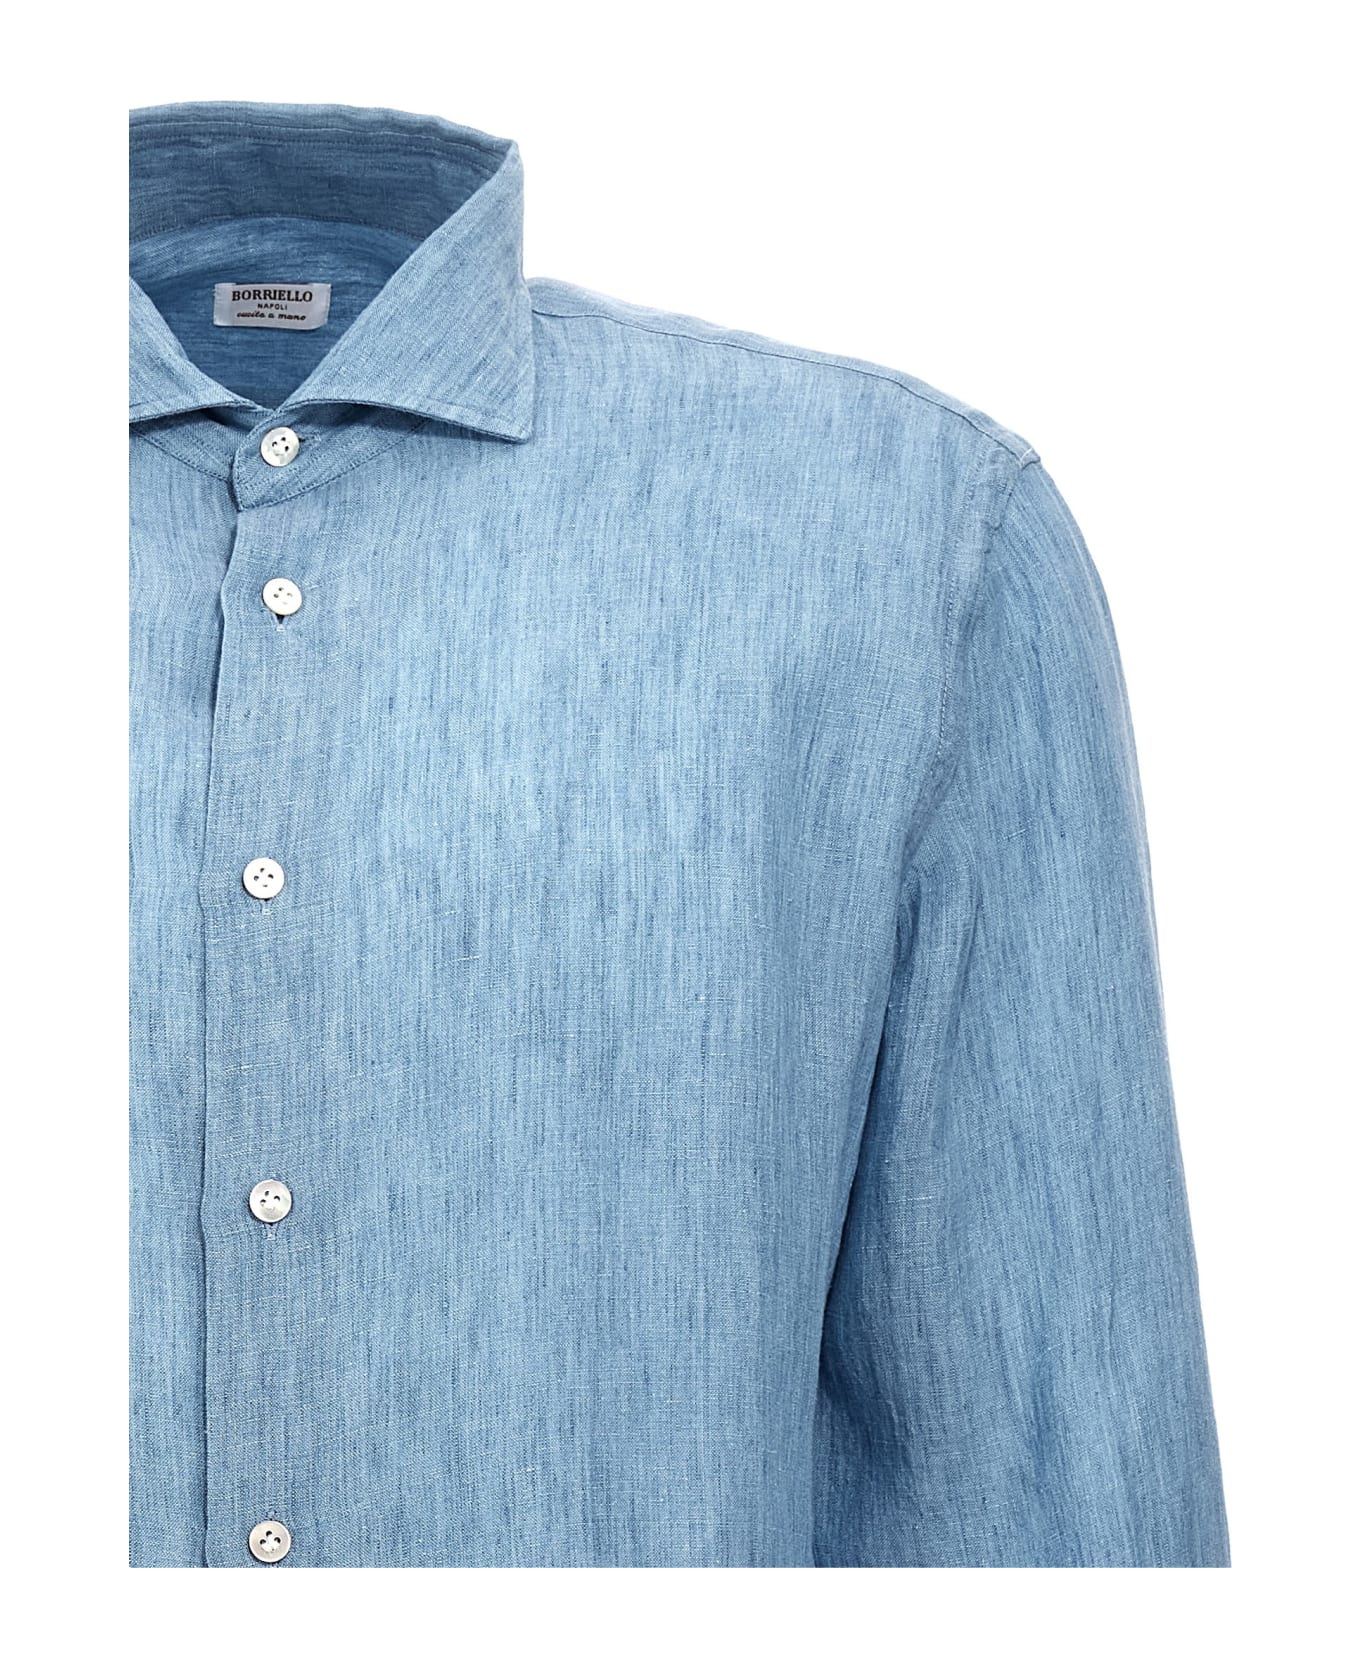 Borriello Napoli Linen Shirt - Light Blue シャツ